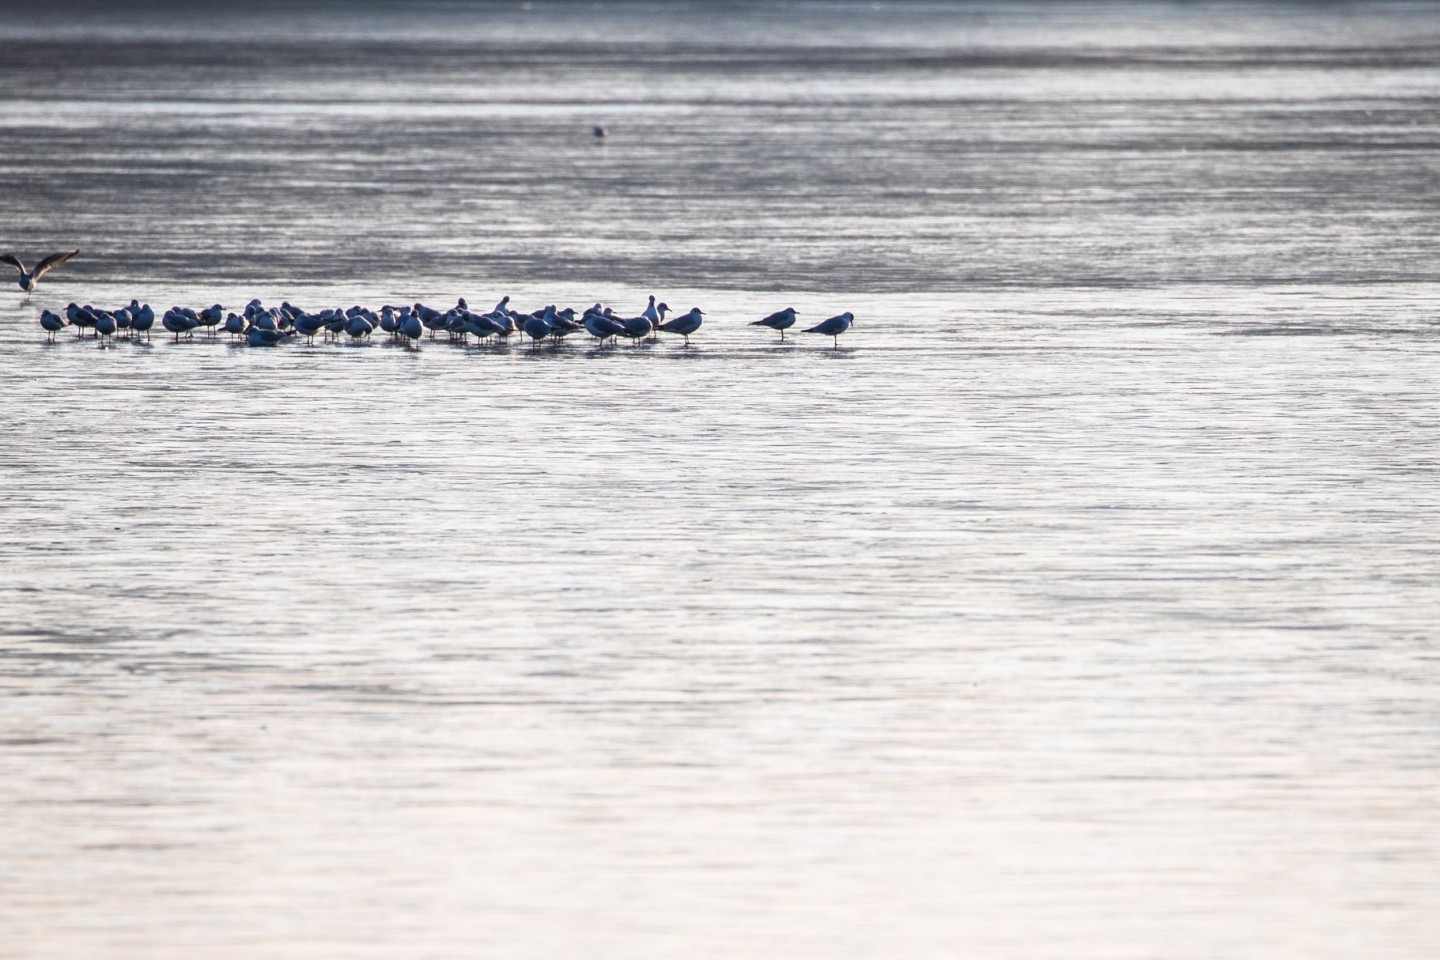 Möwen sitzen auf der dünnen Eisschicht eines Sees. Für Menschen könnte das gefährlich werden.